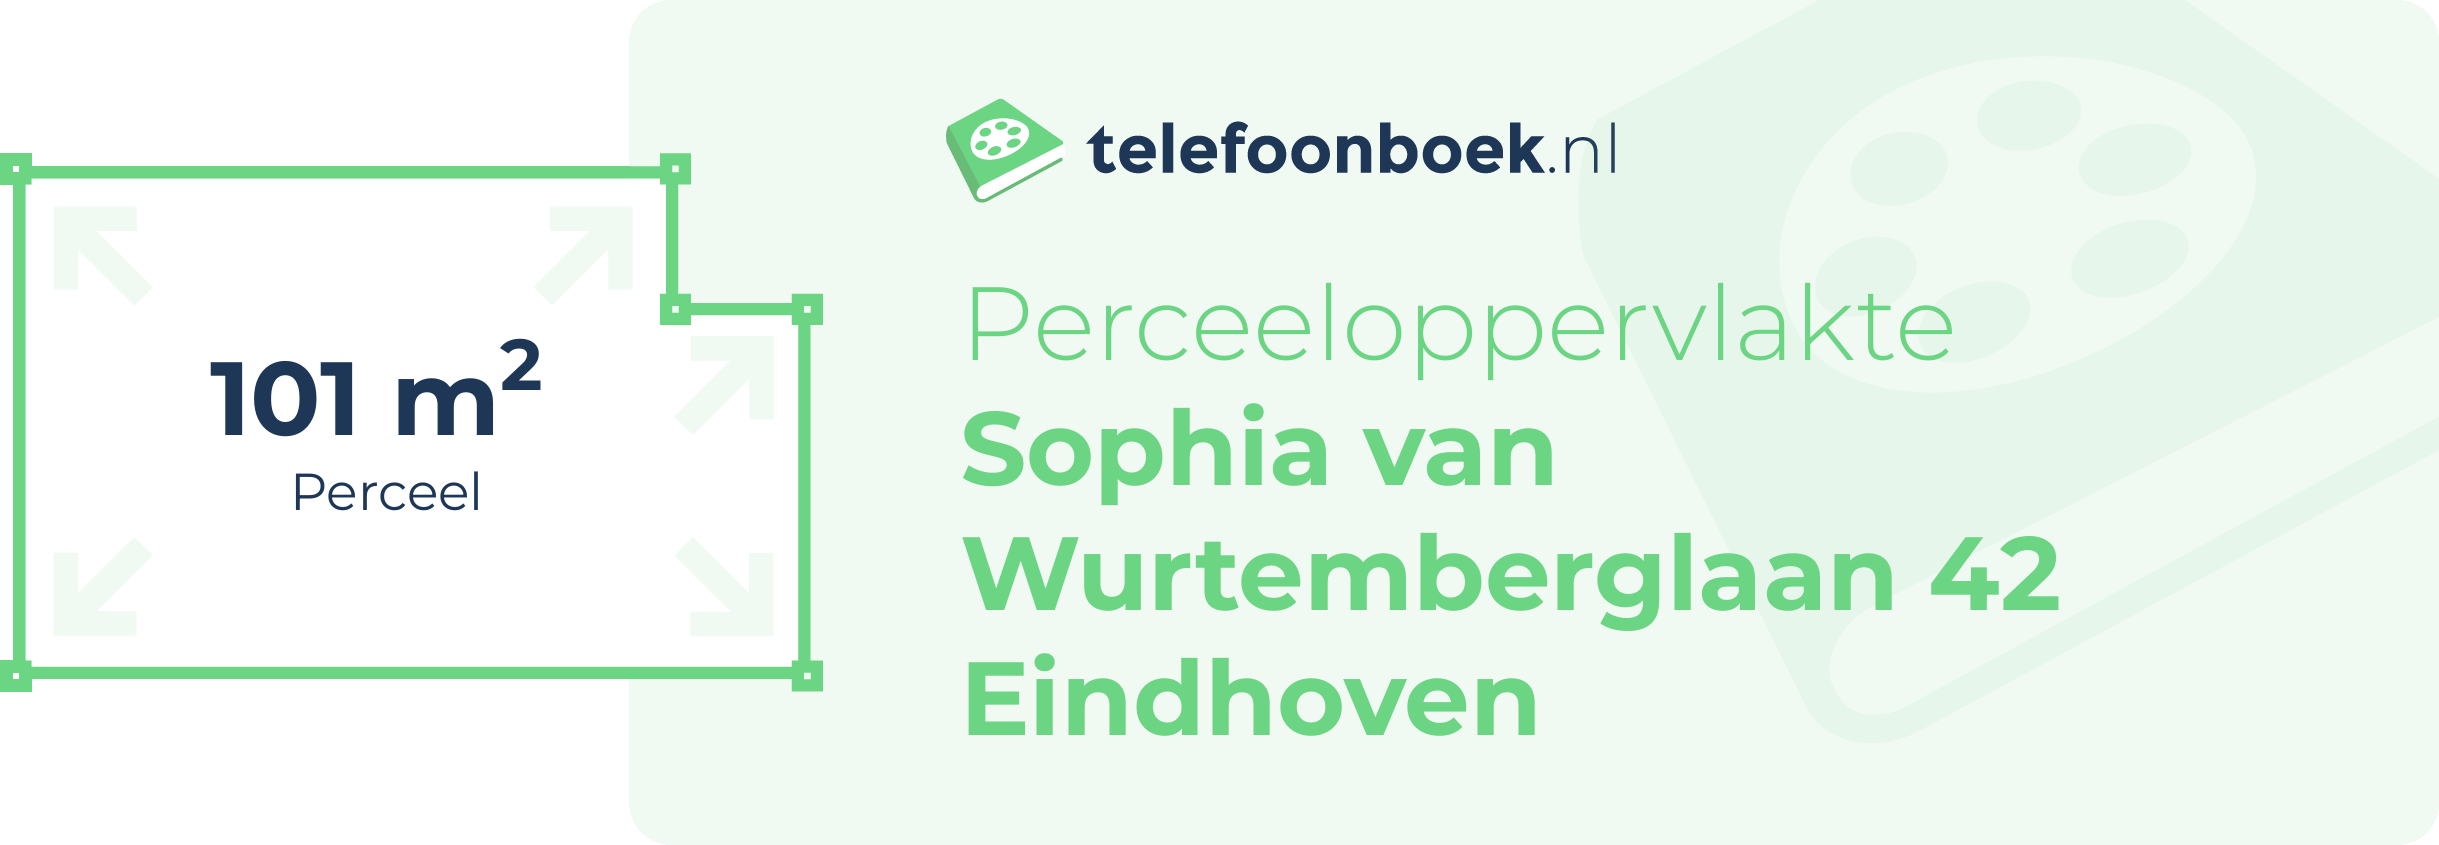 Perceeloppervlakte Sophia Van Wurtemberglaan 42 Eindhoven